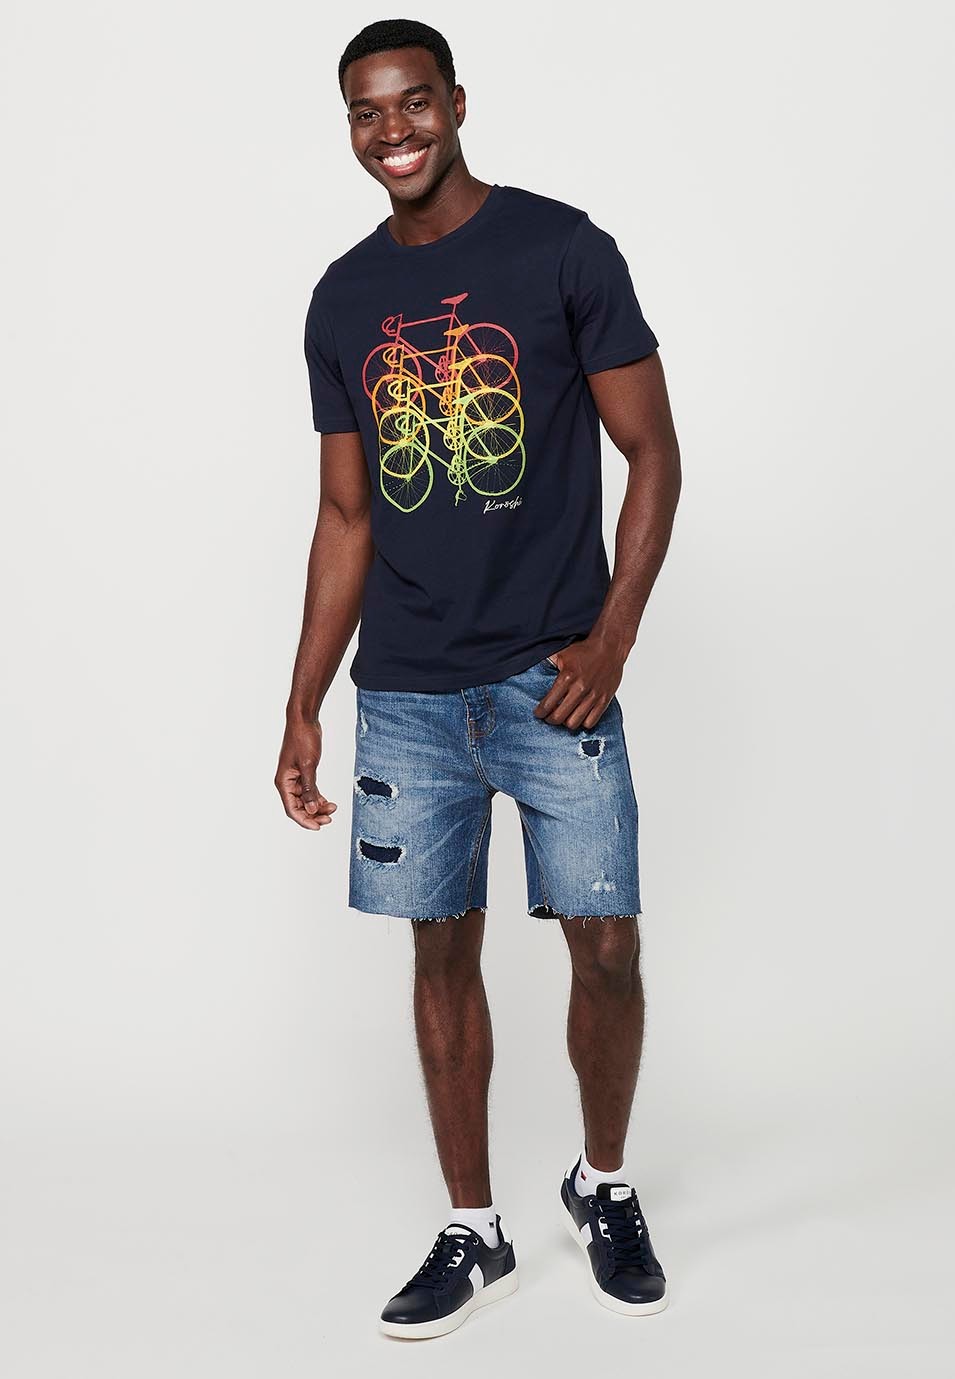 T-shirt en coton à manches courtes avec imprimé vélo sur le devant, coloris marine pour homme 4